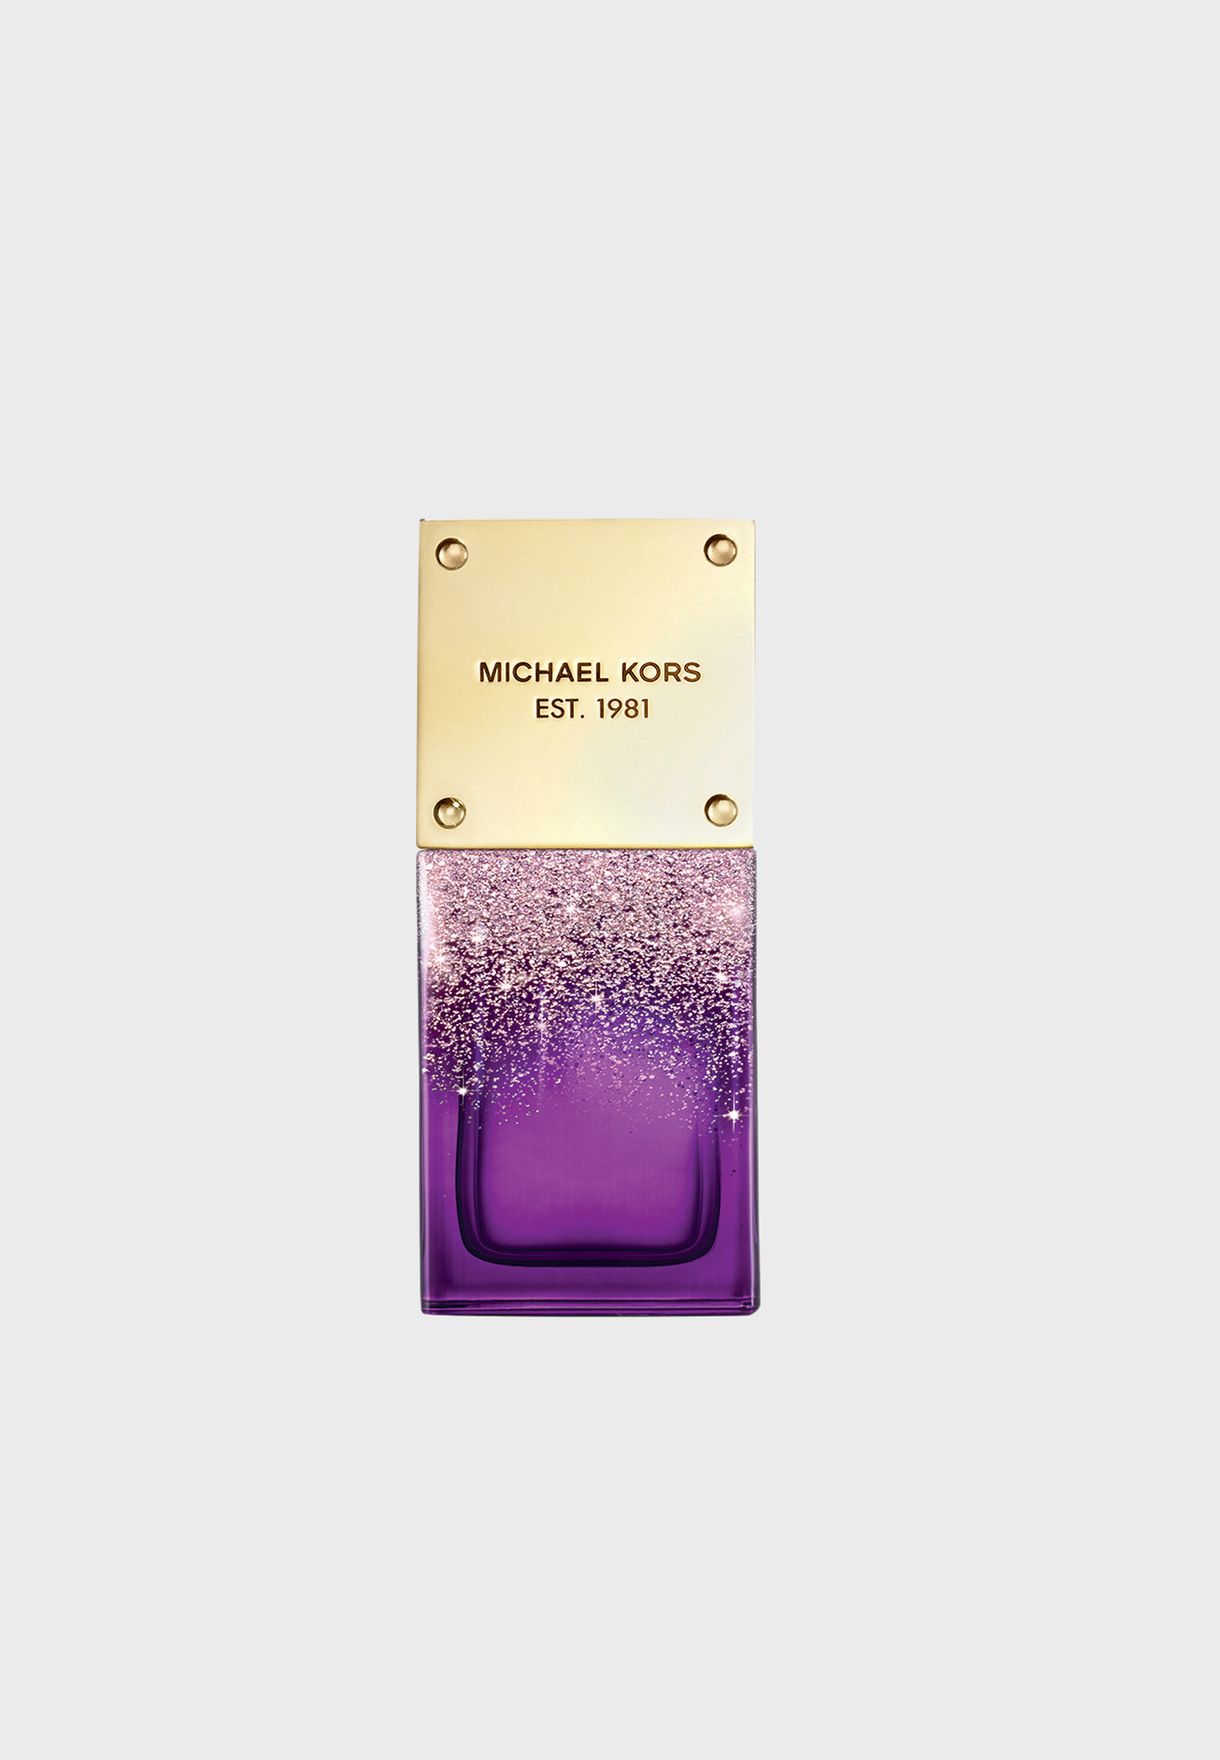 Mua Nước Hoa Nữ MK Michael Kors Twilight Shimmer EDP 30ml  Michael Kors   Mua tại Vua Hàng Hiệu h088293